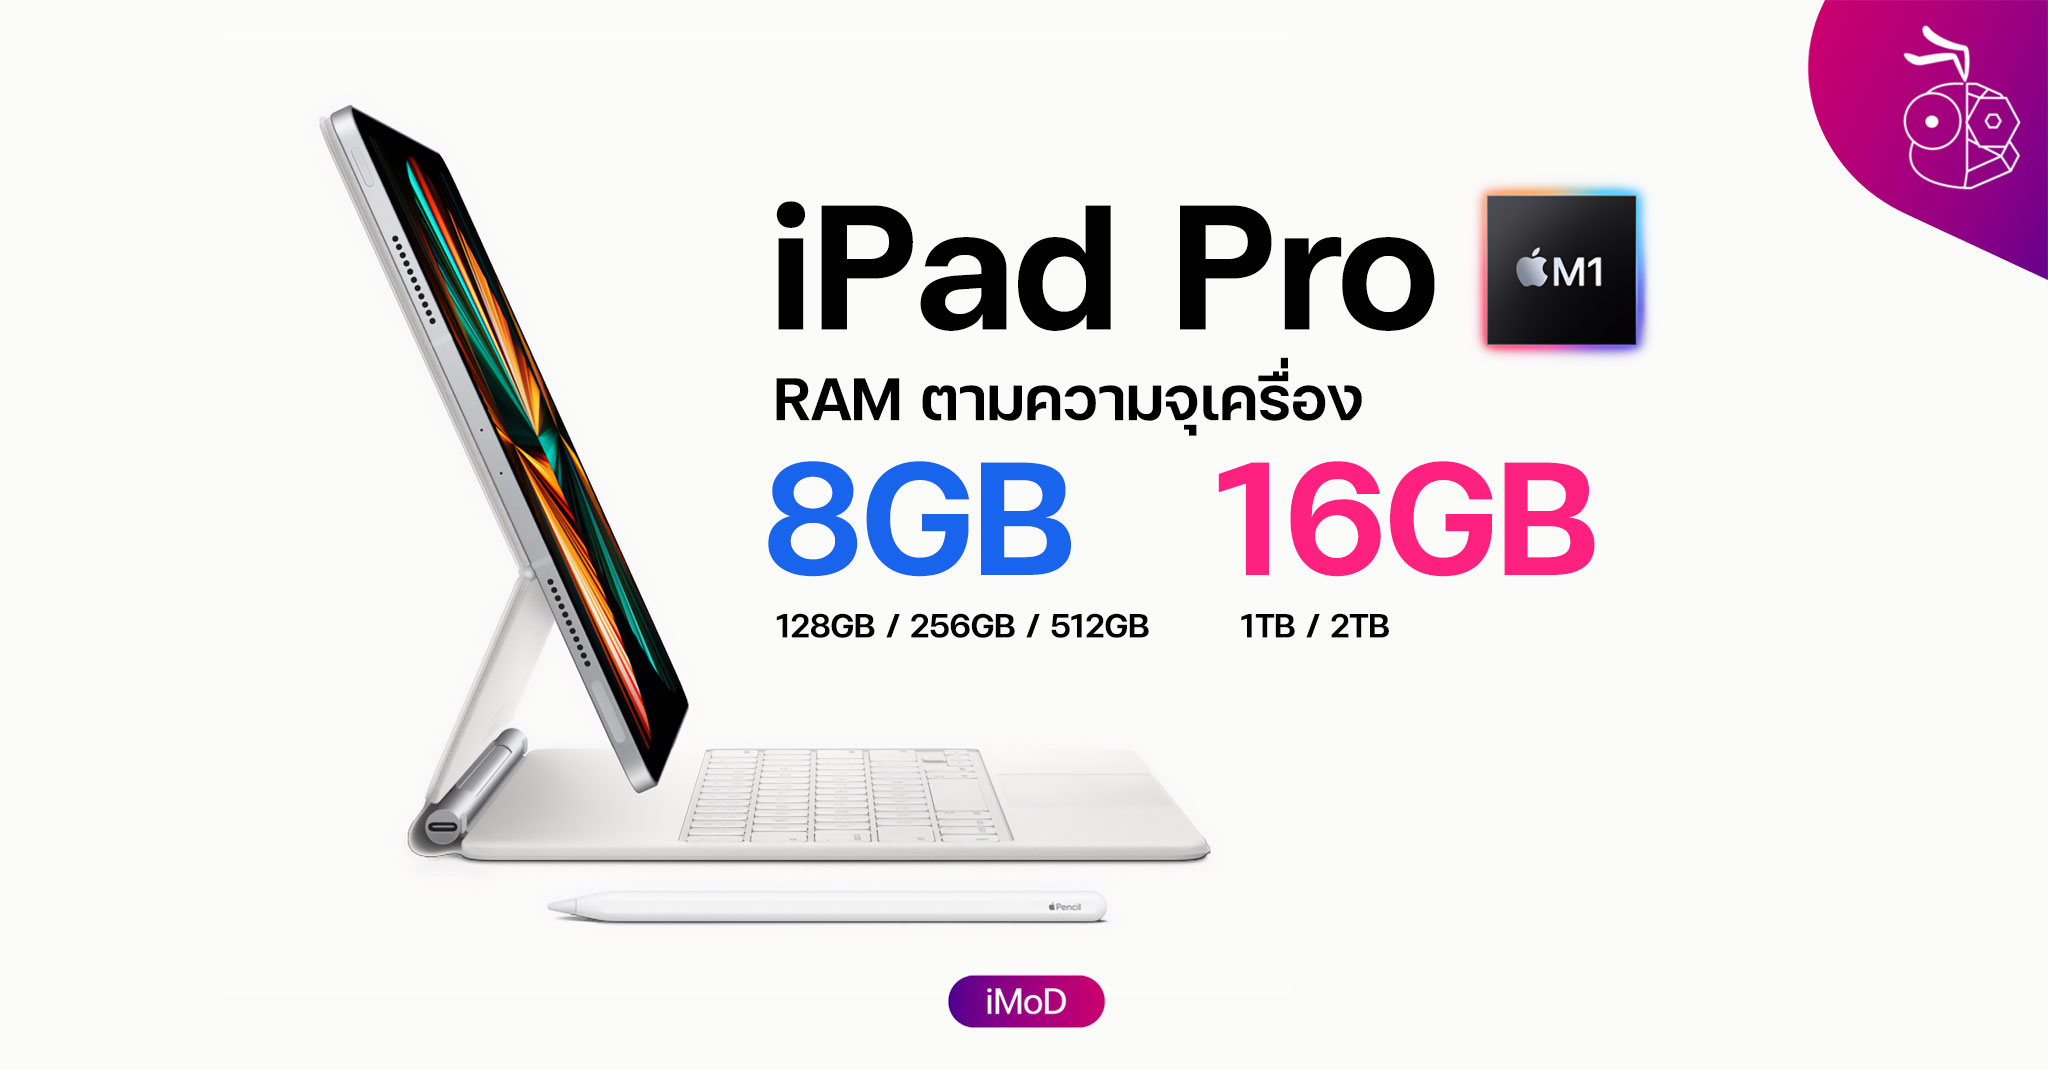 iPad Pro รุ่น M1 (2021) มาพร้อม RAM 8GB, 16GB ตามความจุ ...